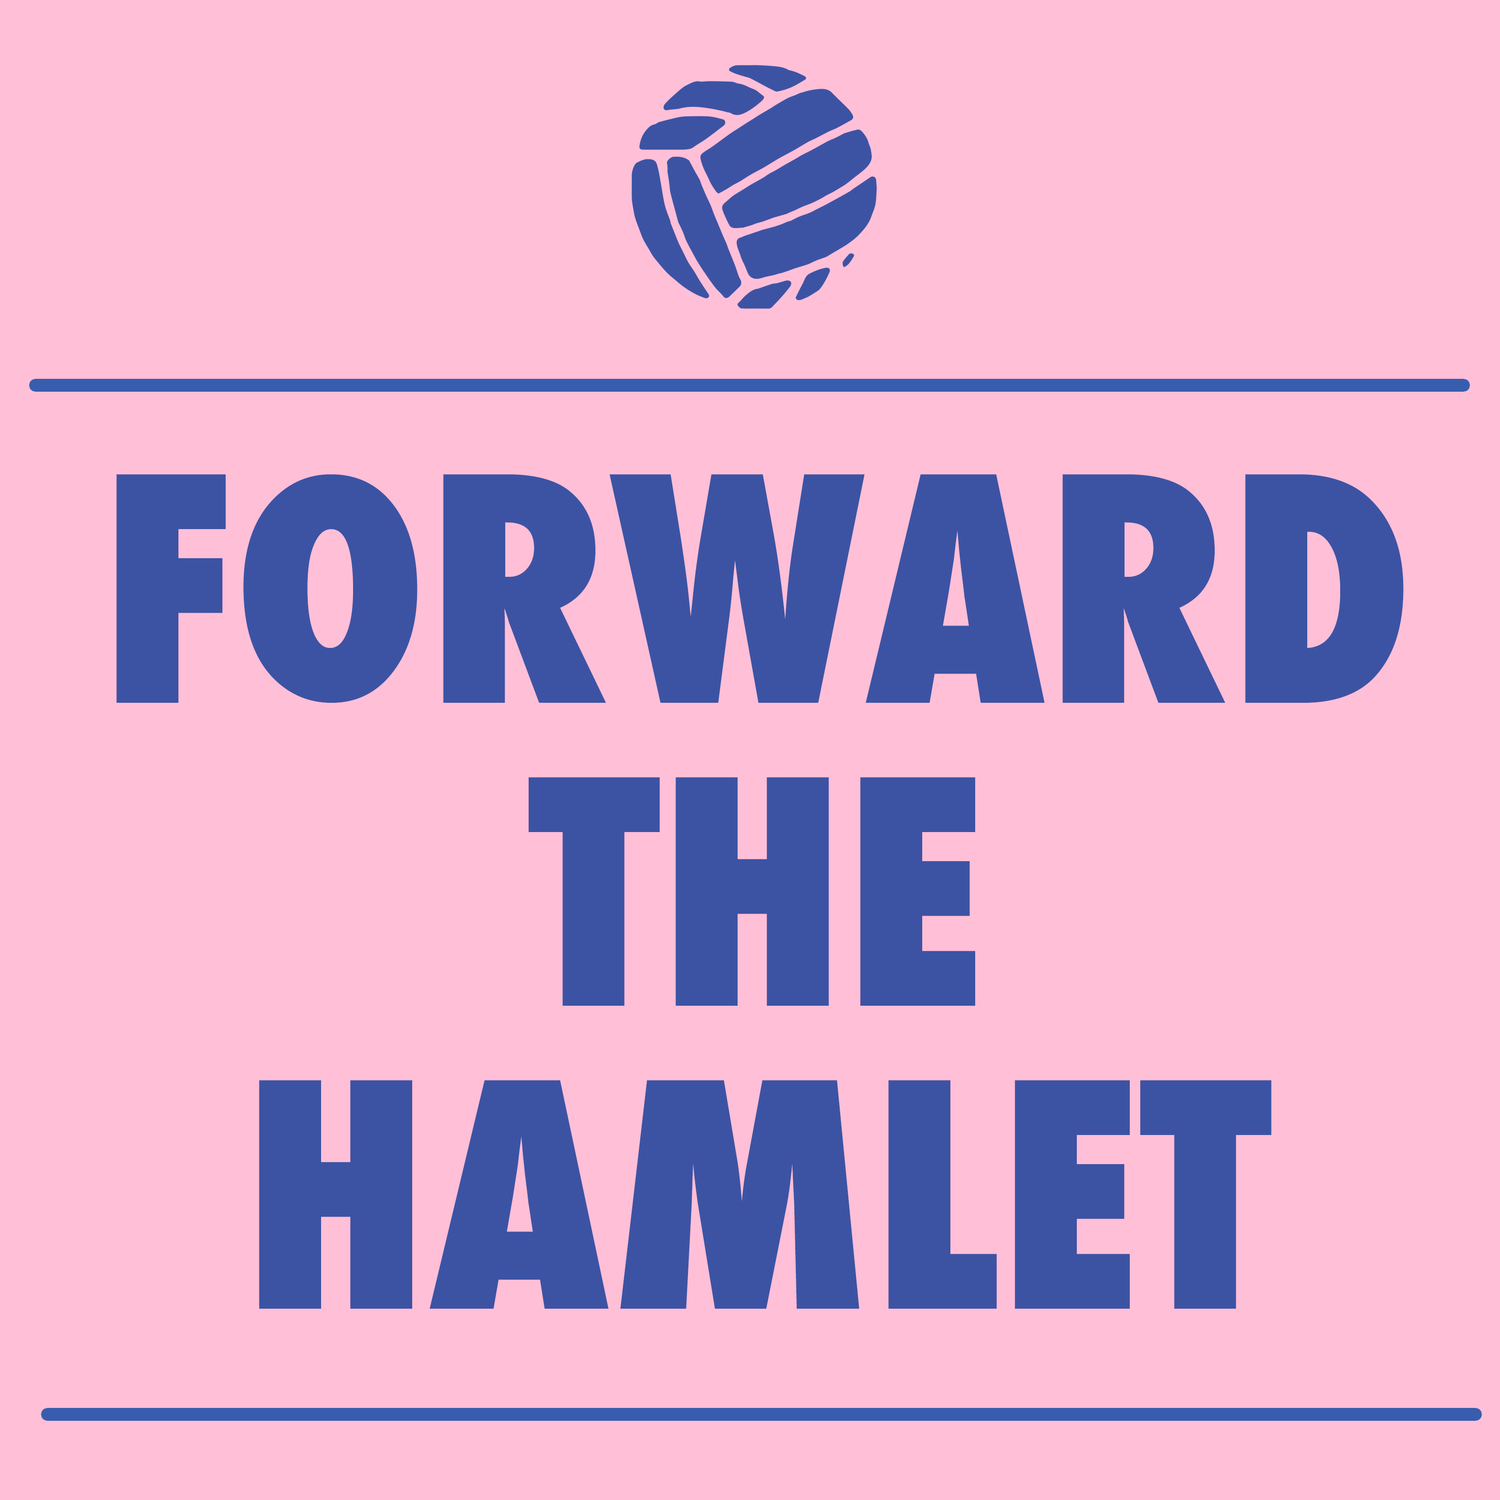 Forward the Hamlet